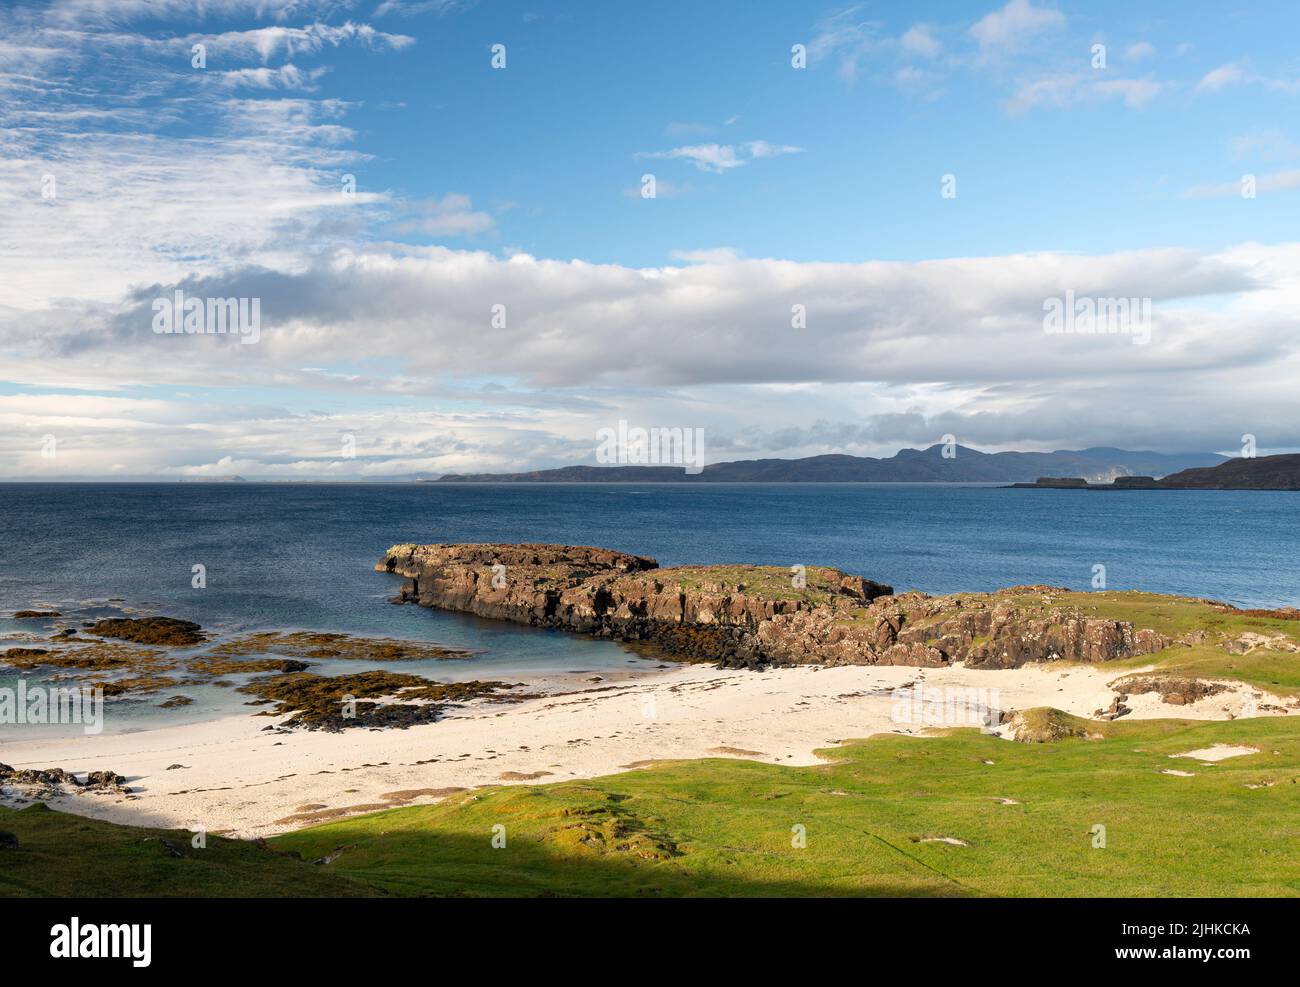 Port na Ba sur l'île de Mull, avec Rhum, Eigg et Skye à l'horizon. Banque D'Images